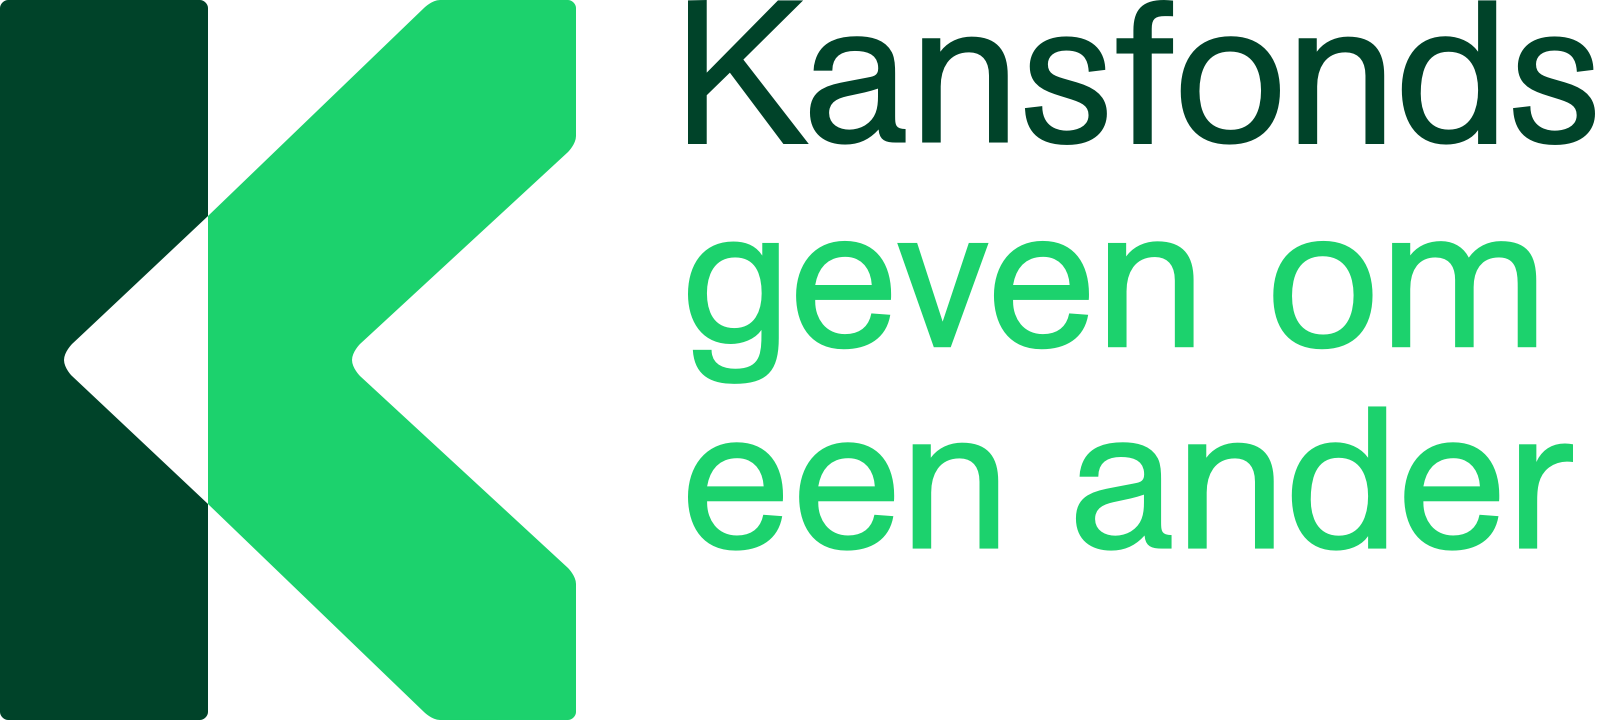 Kansfonds-groen-1600px